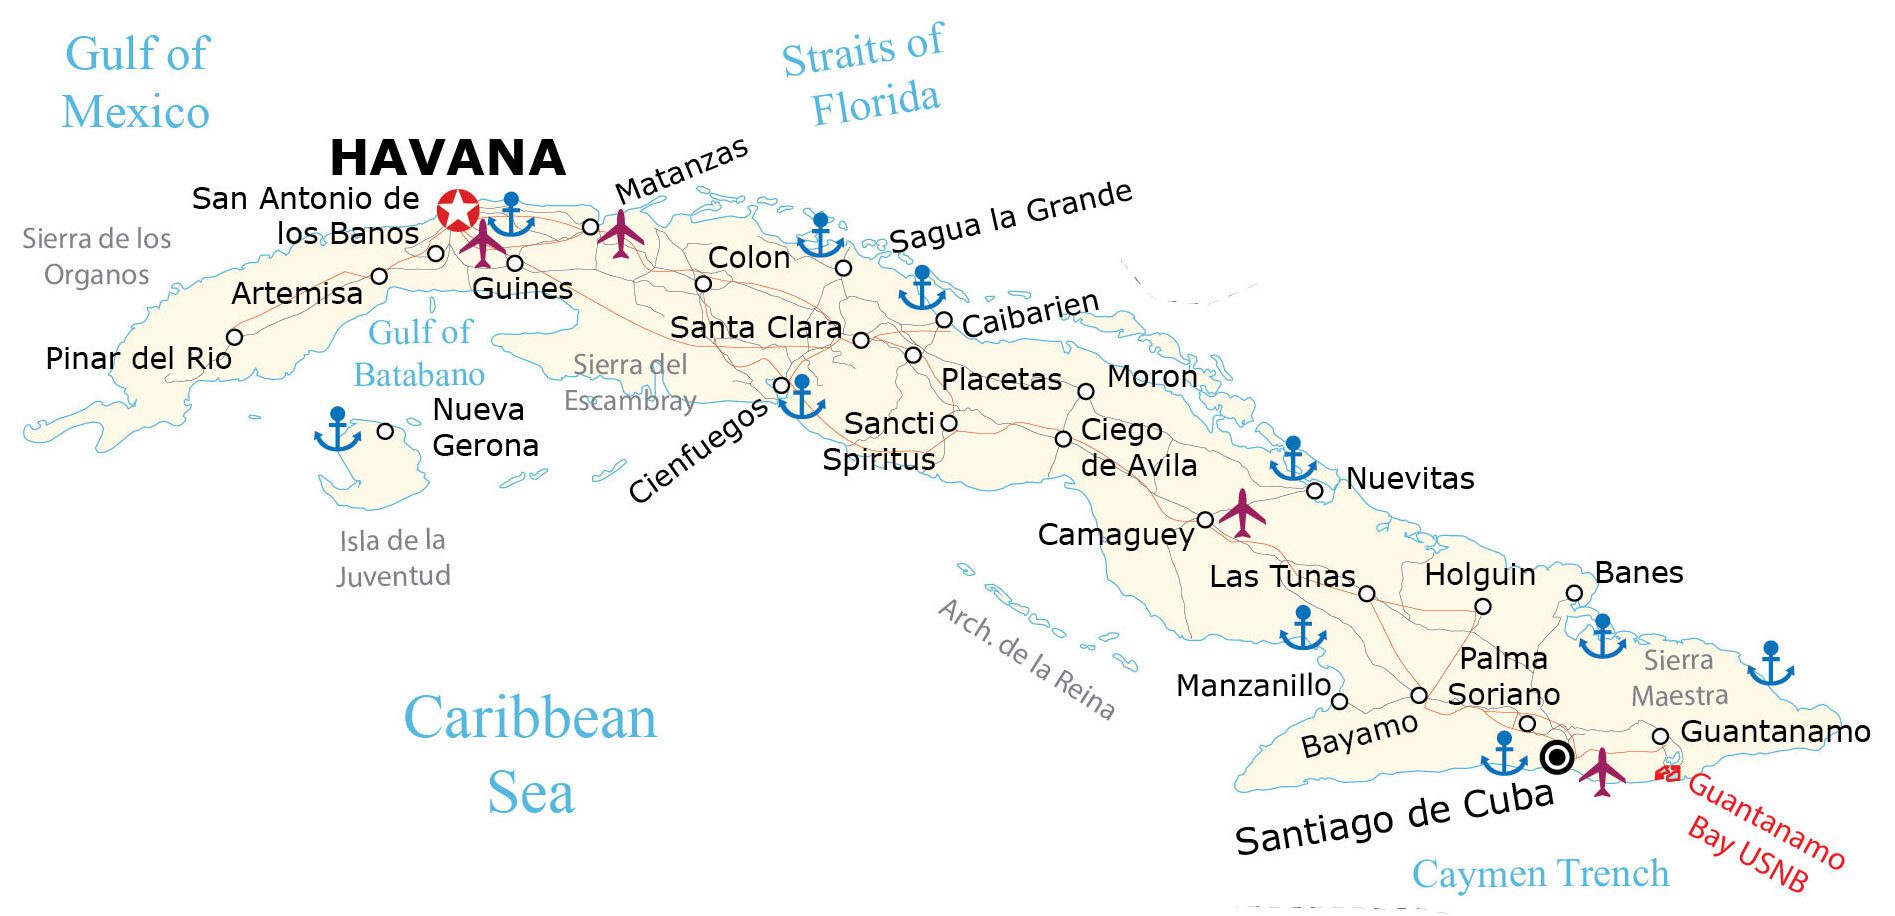 Mappa geografica di Cuba